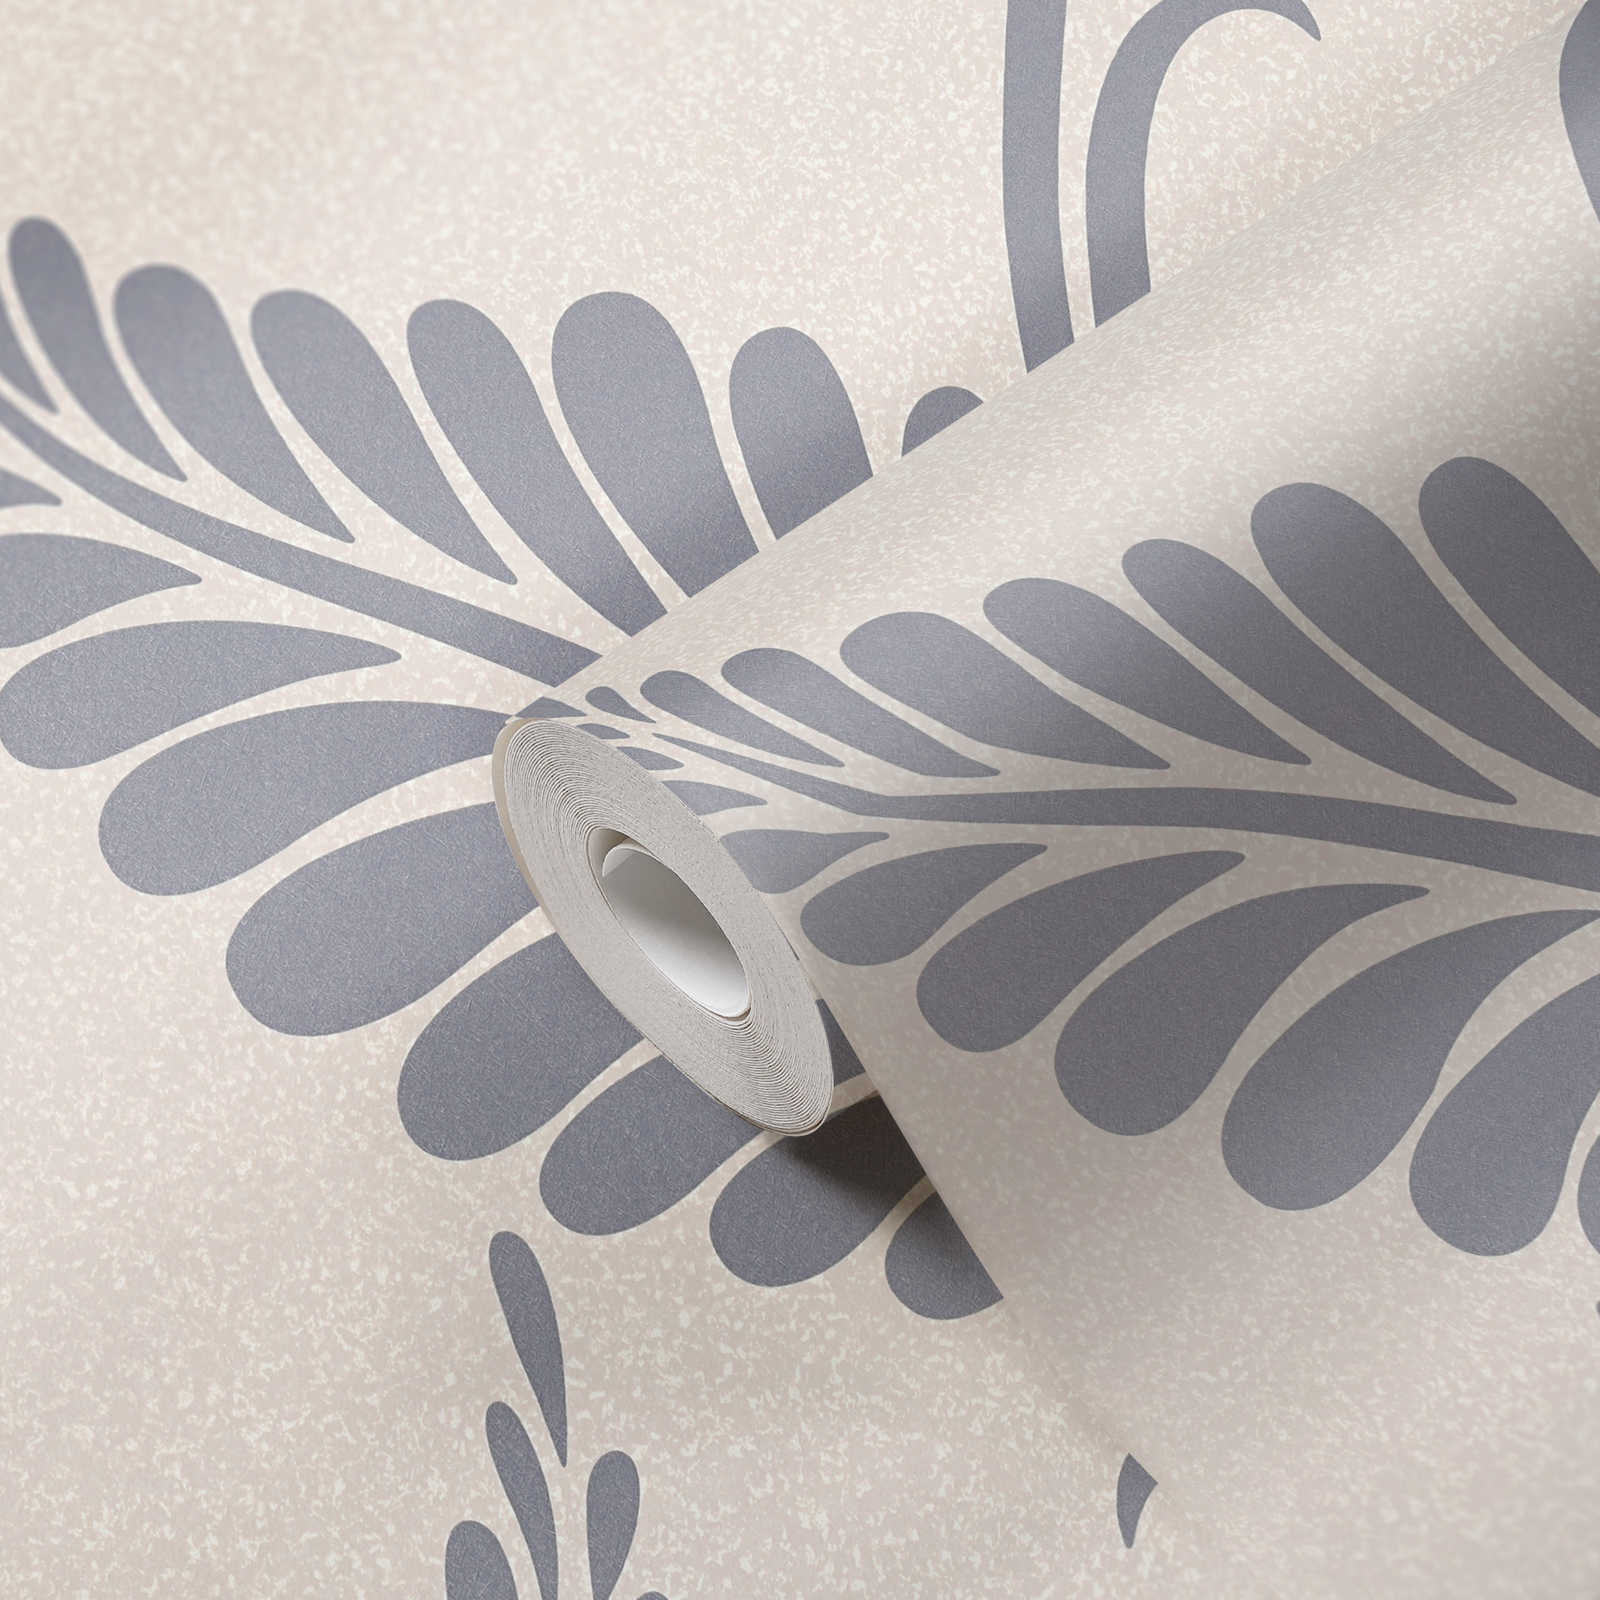             Papiertapete mit Blättern im floralen Stil glänzend – Greige, Silber
        